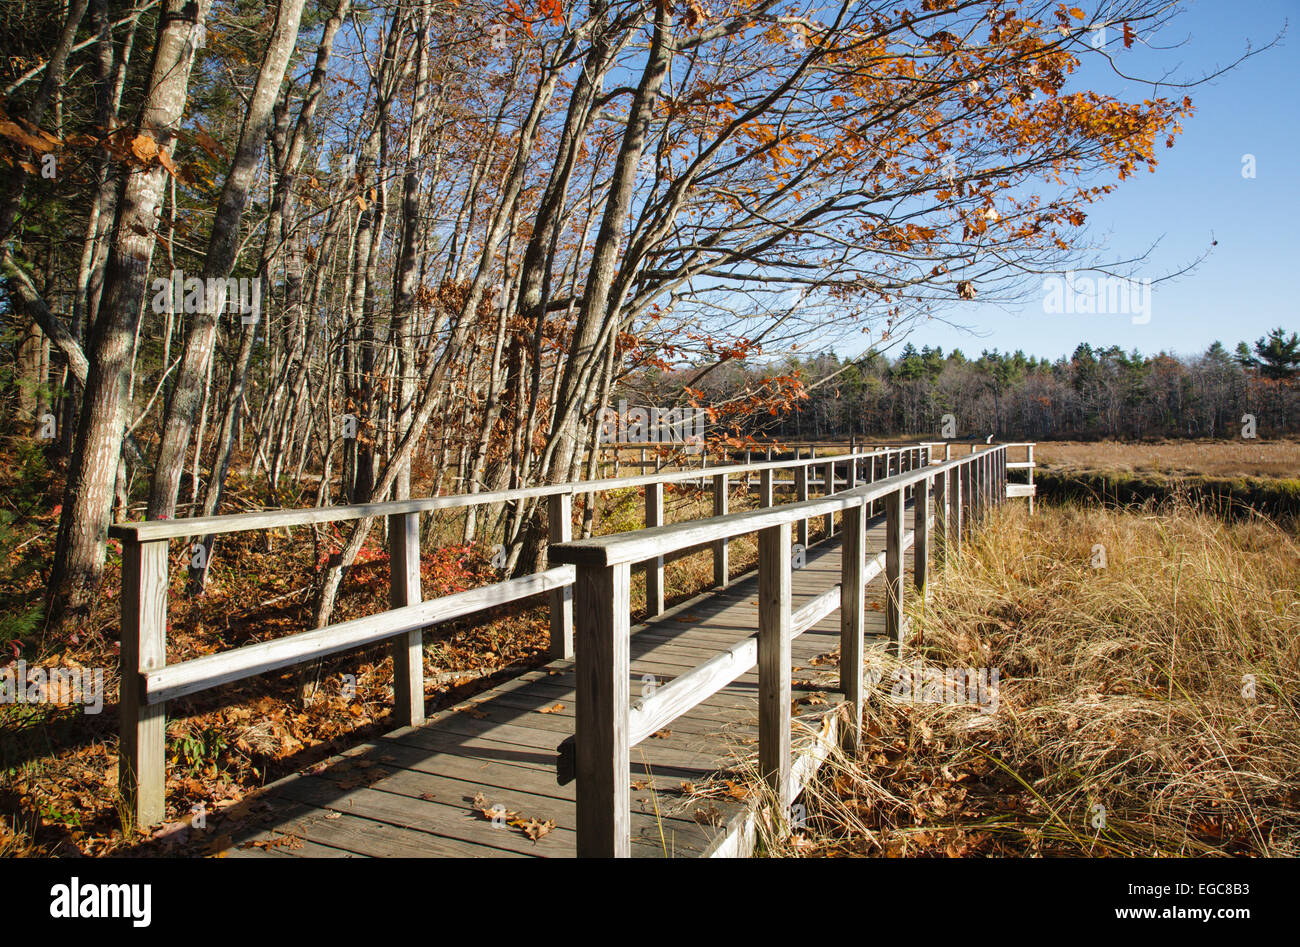 Rachel Carson National Wildlife Refuge pendant les mois d'automne dans la région de Wells, Maine USA Banque D'Images